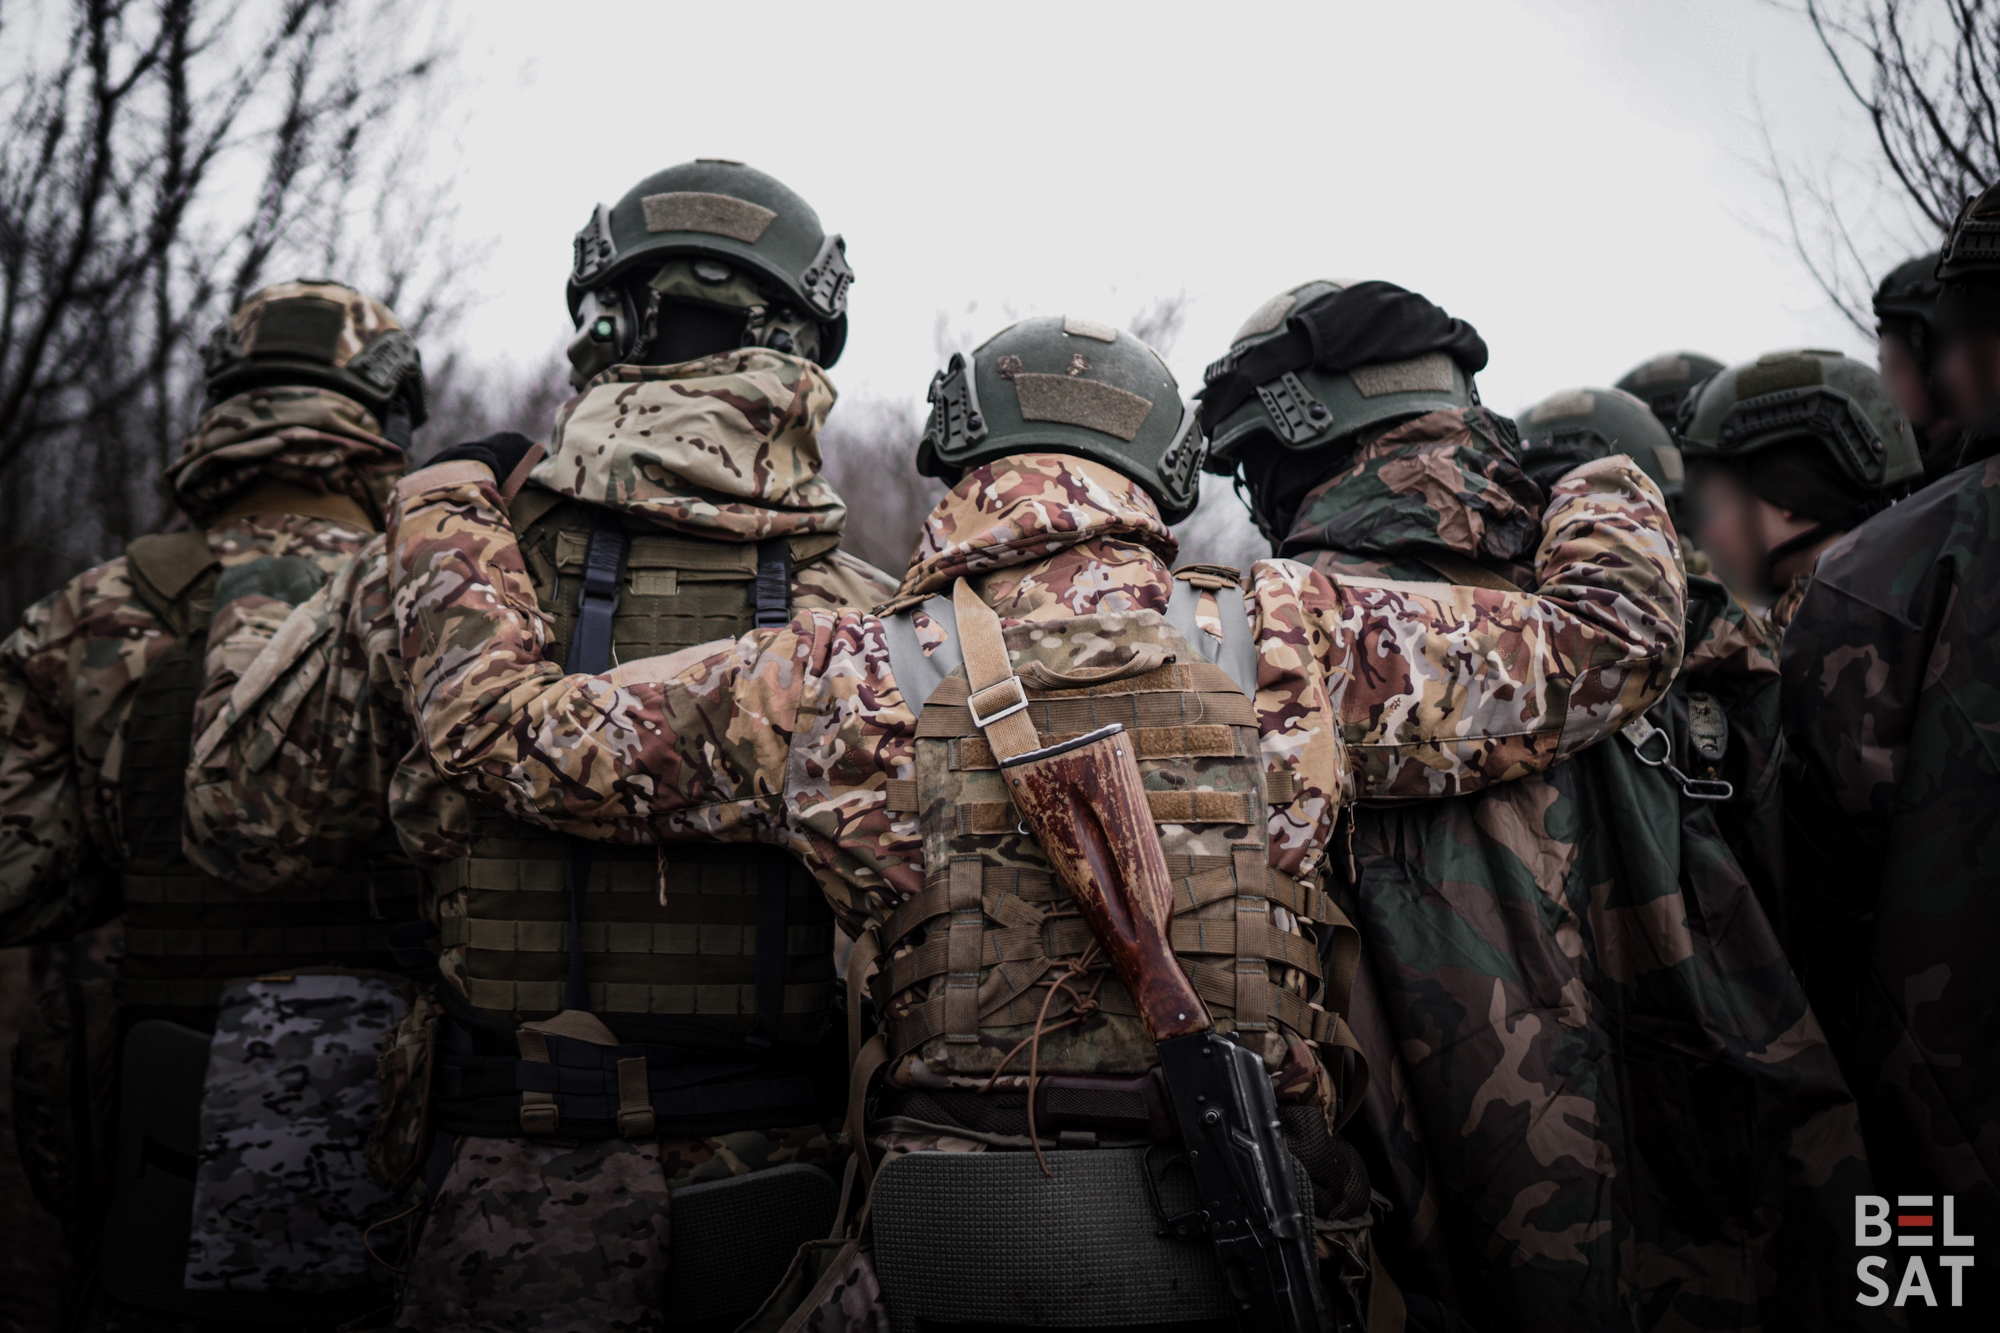 Бойцы учебной роты полка Кастуся Калиновского на занятиях по инженерному делу. Украина. Февраль 2023 года.
Фото: Белсат